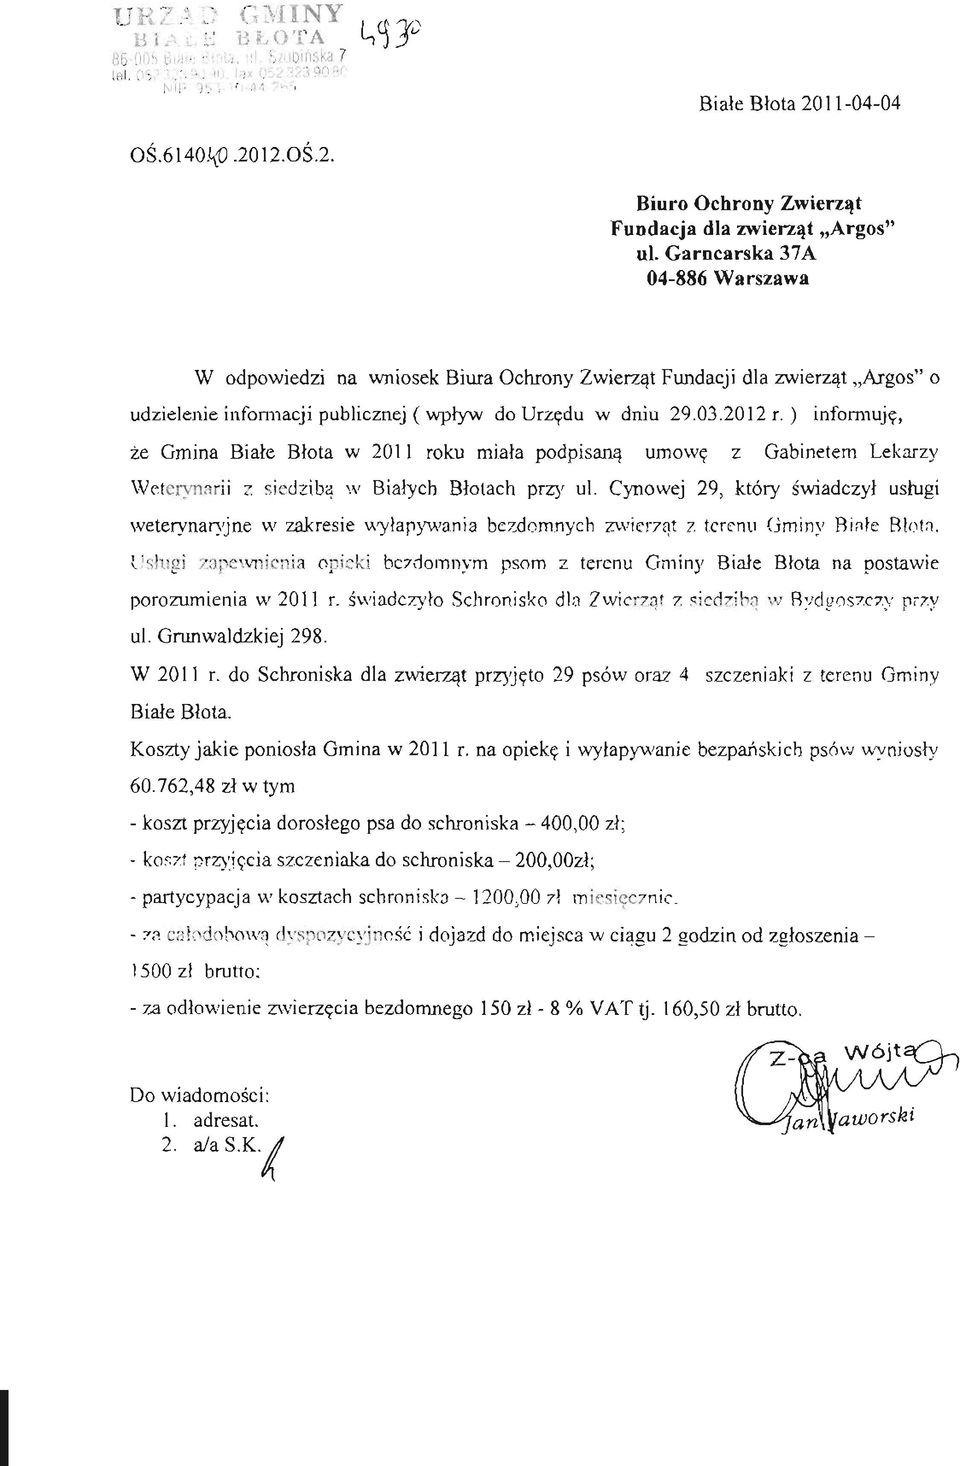 ) informuję, że Gmina Białe Błota w 2011 roku miała podpisaną umowę z Gabinetem Lekarzy Weterynarii z siedziba w Białych Błotach przy ul.